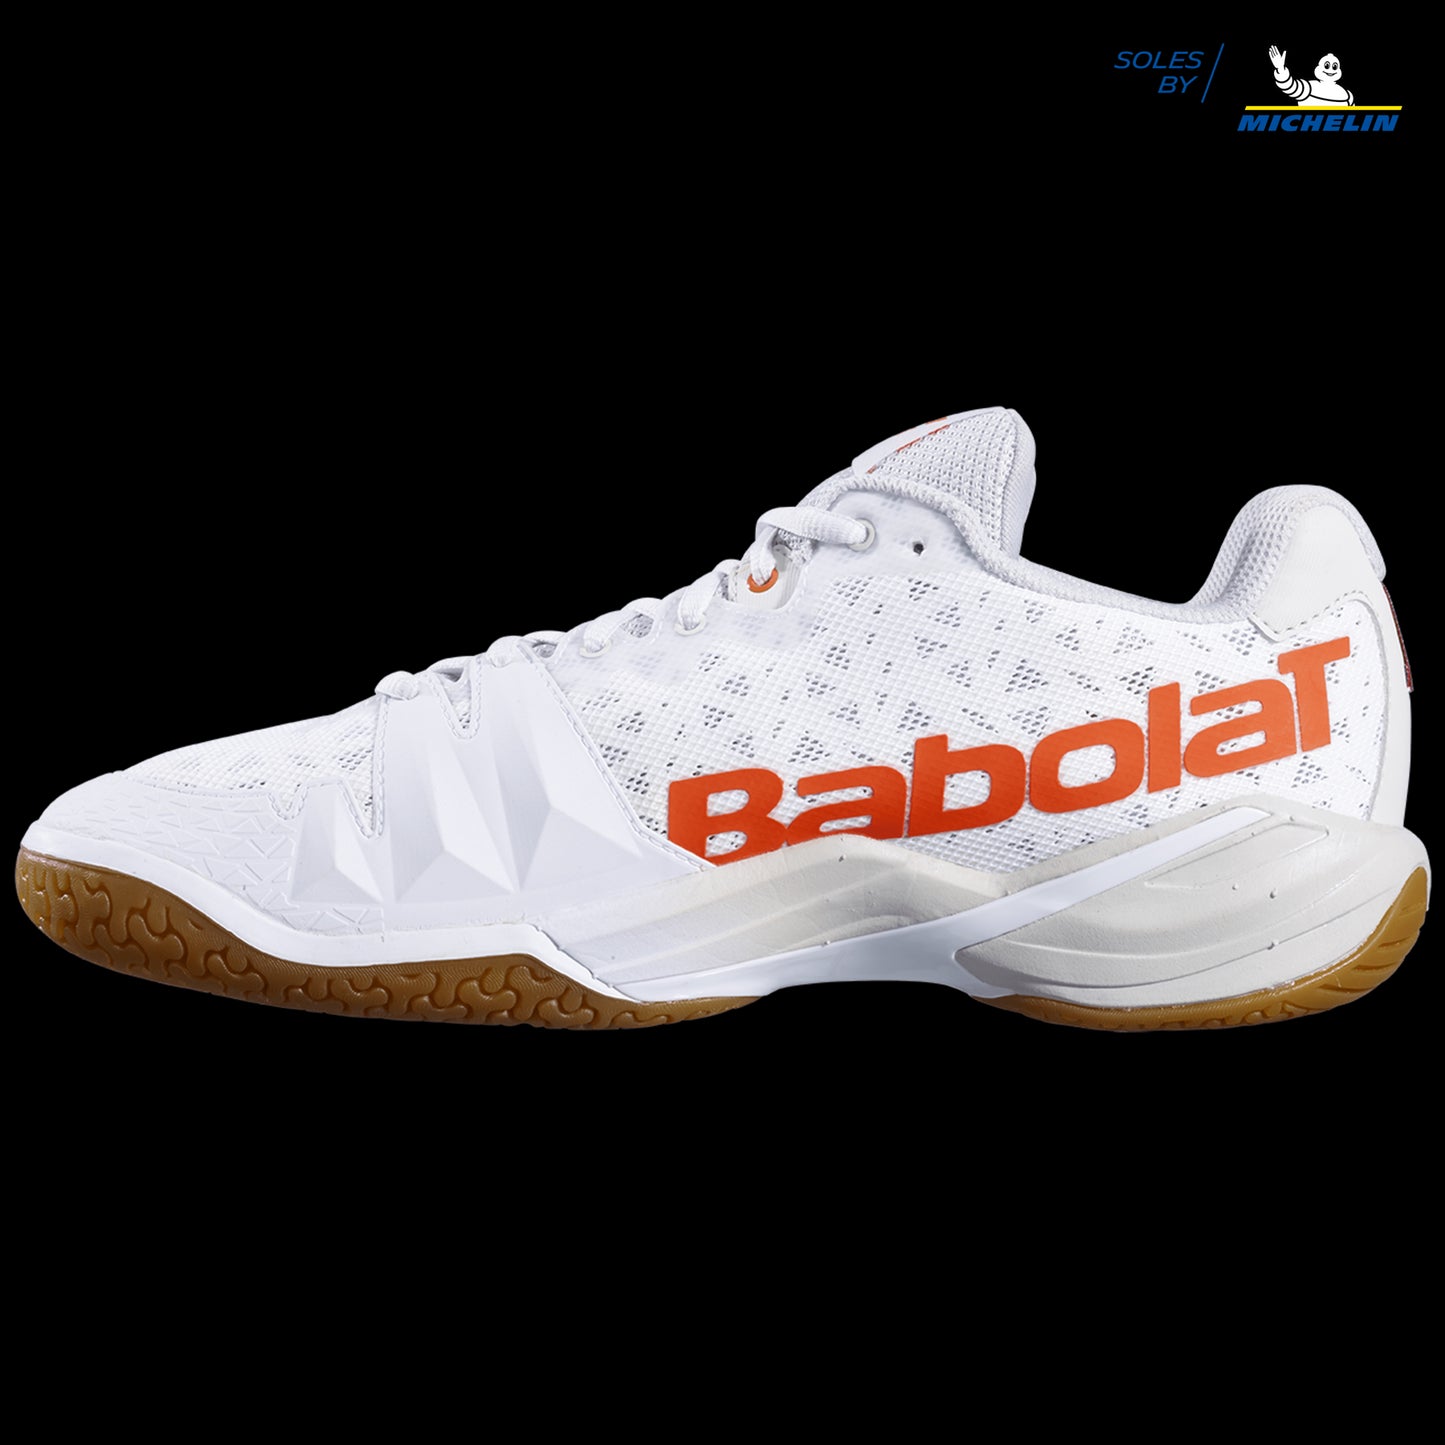 Babolat Shadow Tour Badminton Shoes - White / Light Grey